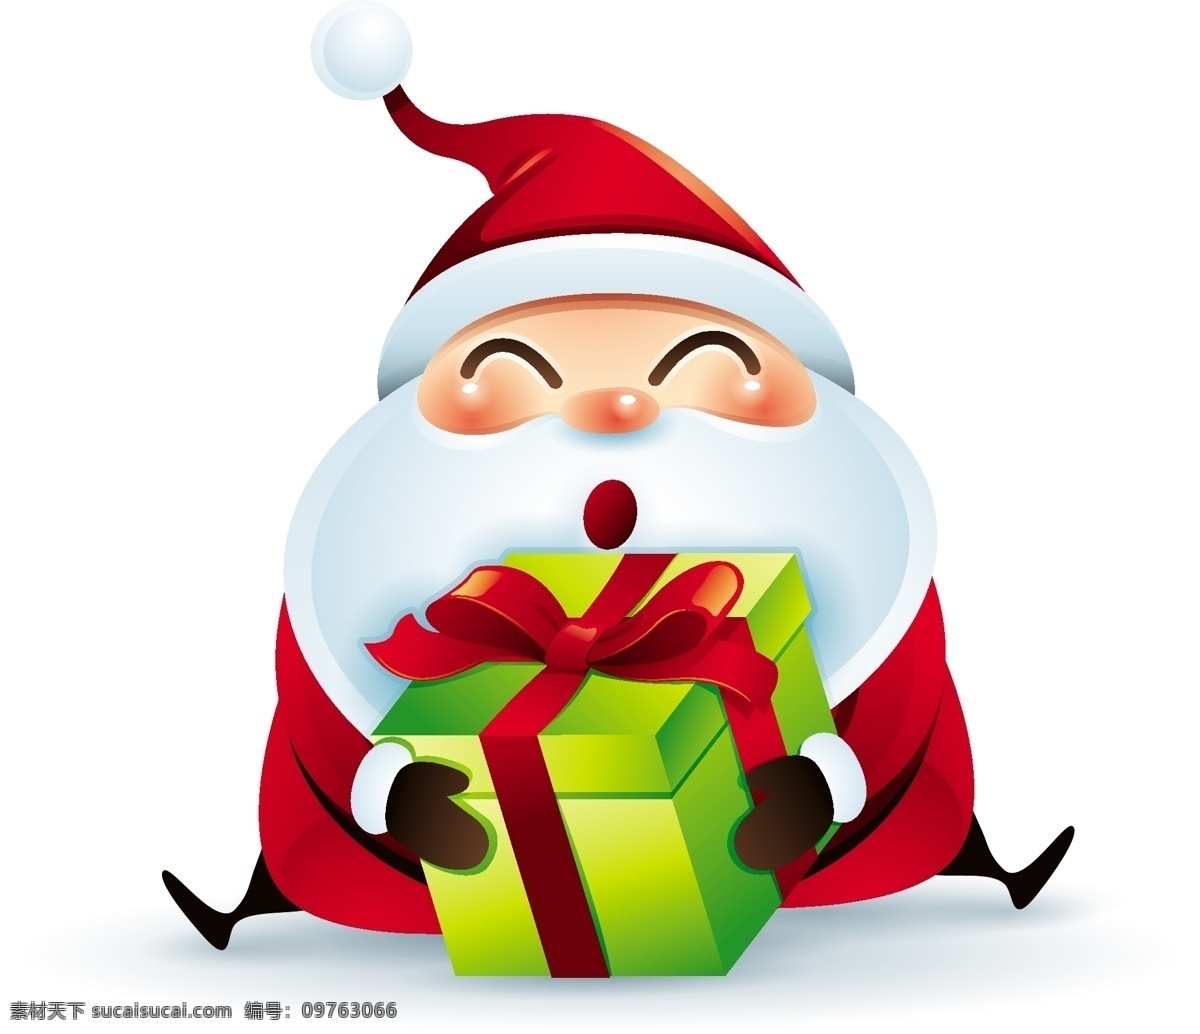 礼物 圣诞节 老人 矢量 礼物盒 蝴蝶结 红色 白胡子 卡通 人物 形象 节日 装饰